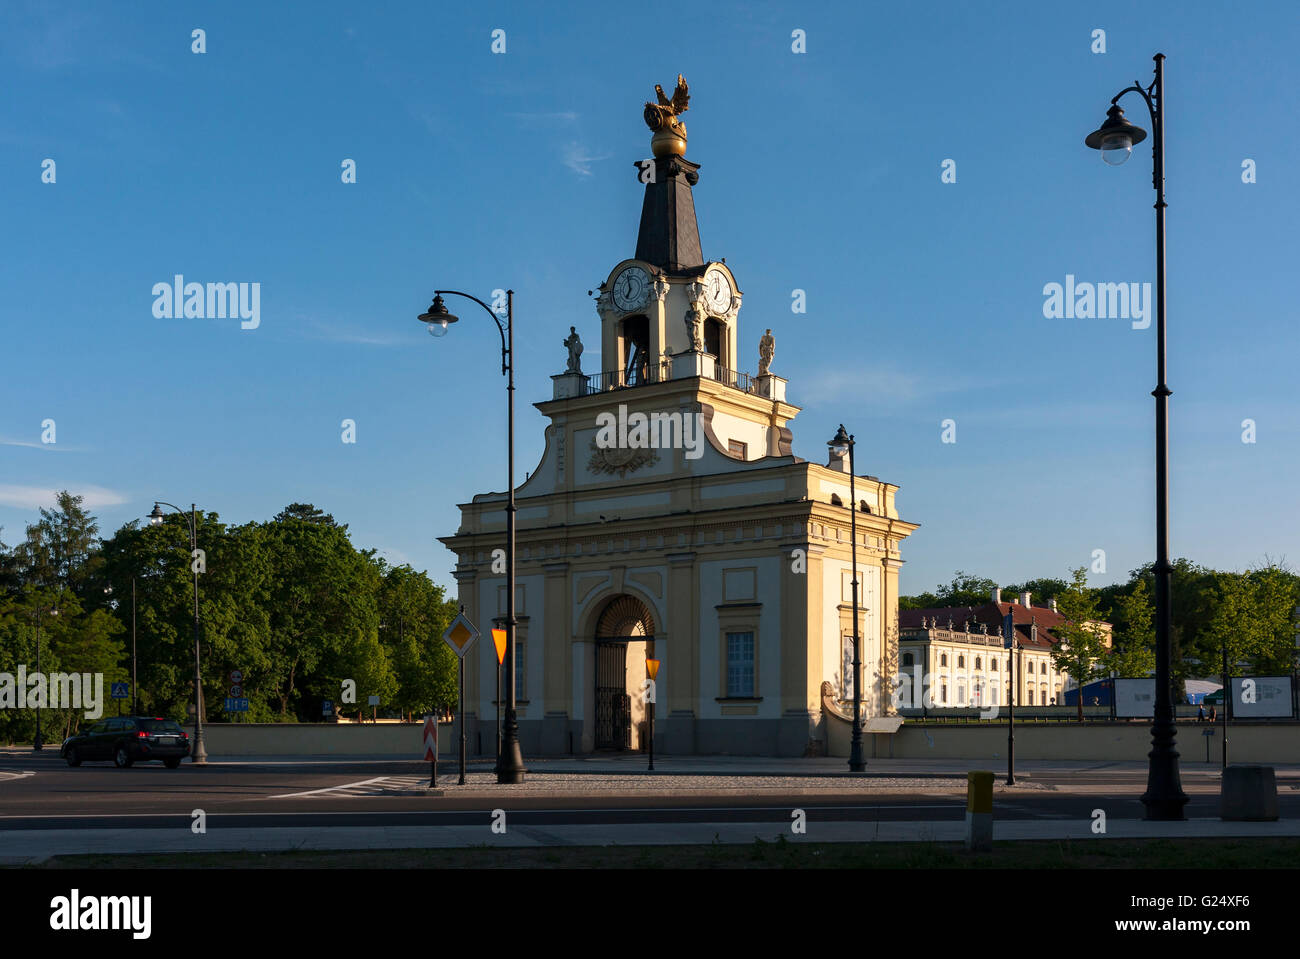 L'architecture. Porte du Palais Branicki à Bialystok, Pologne. Banque D'Images